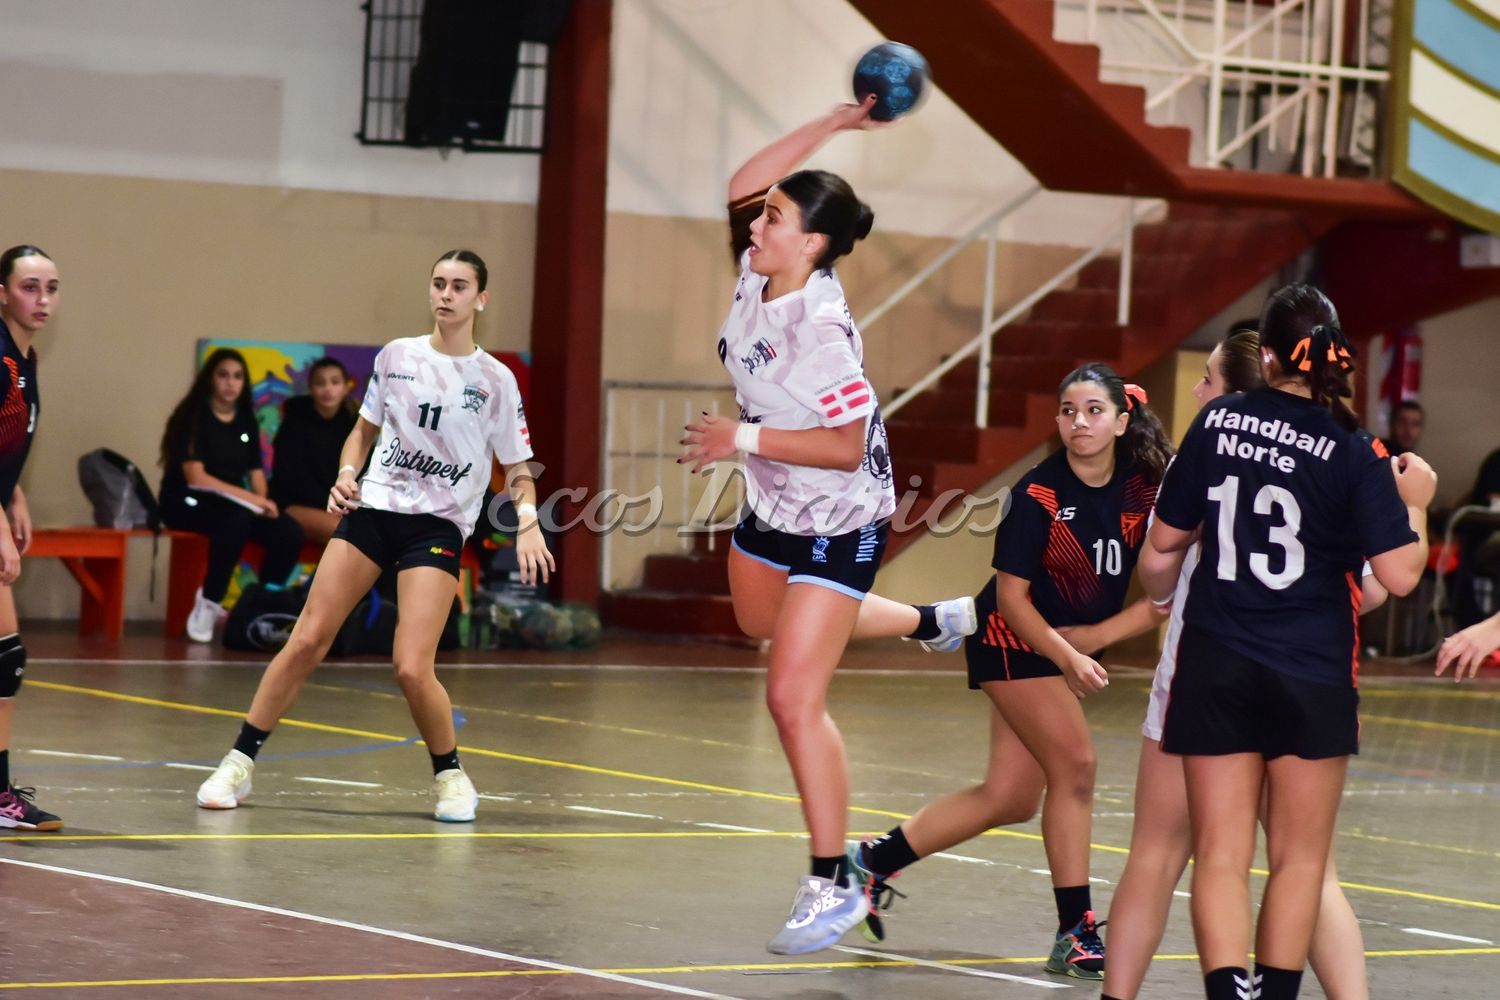 Altamira y su handball femenino